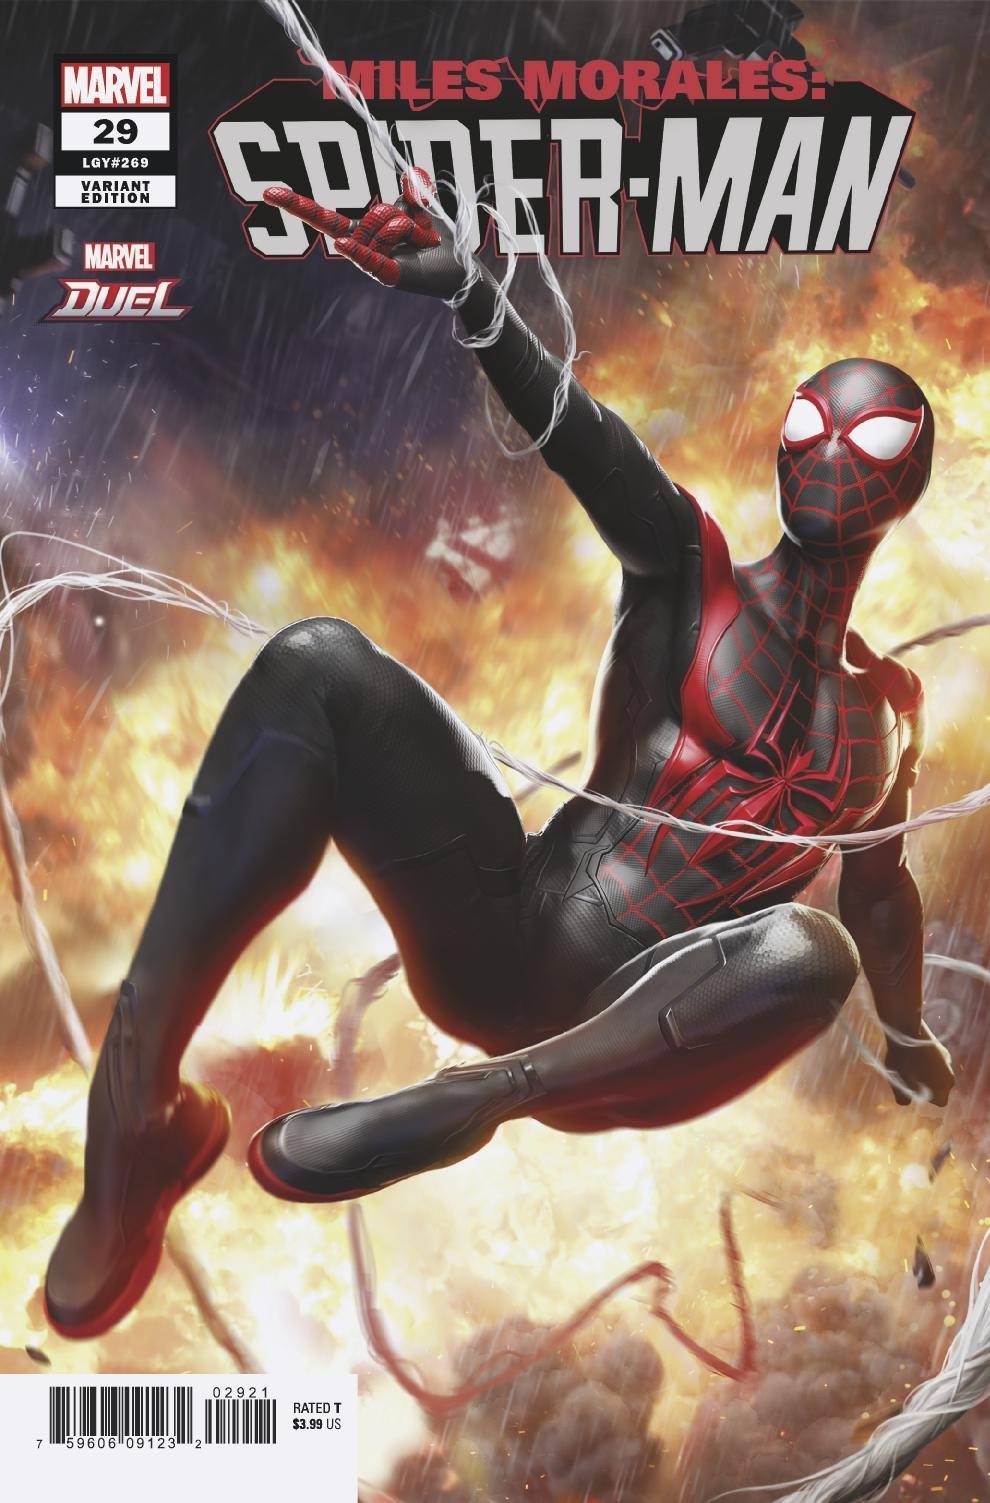 Miles Morales Spider-man 29 - Heroes Cave